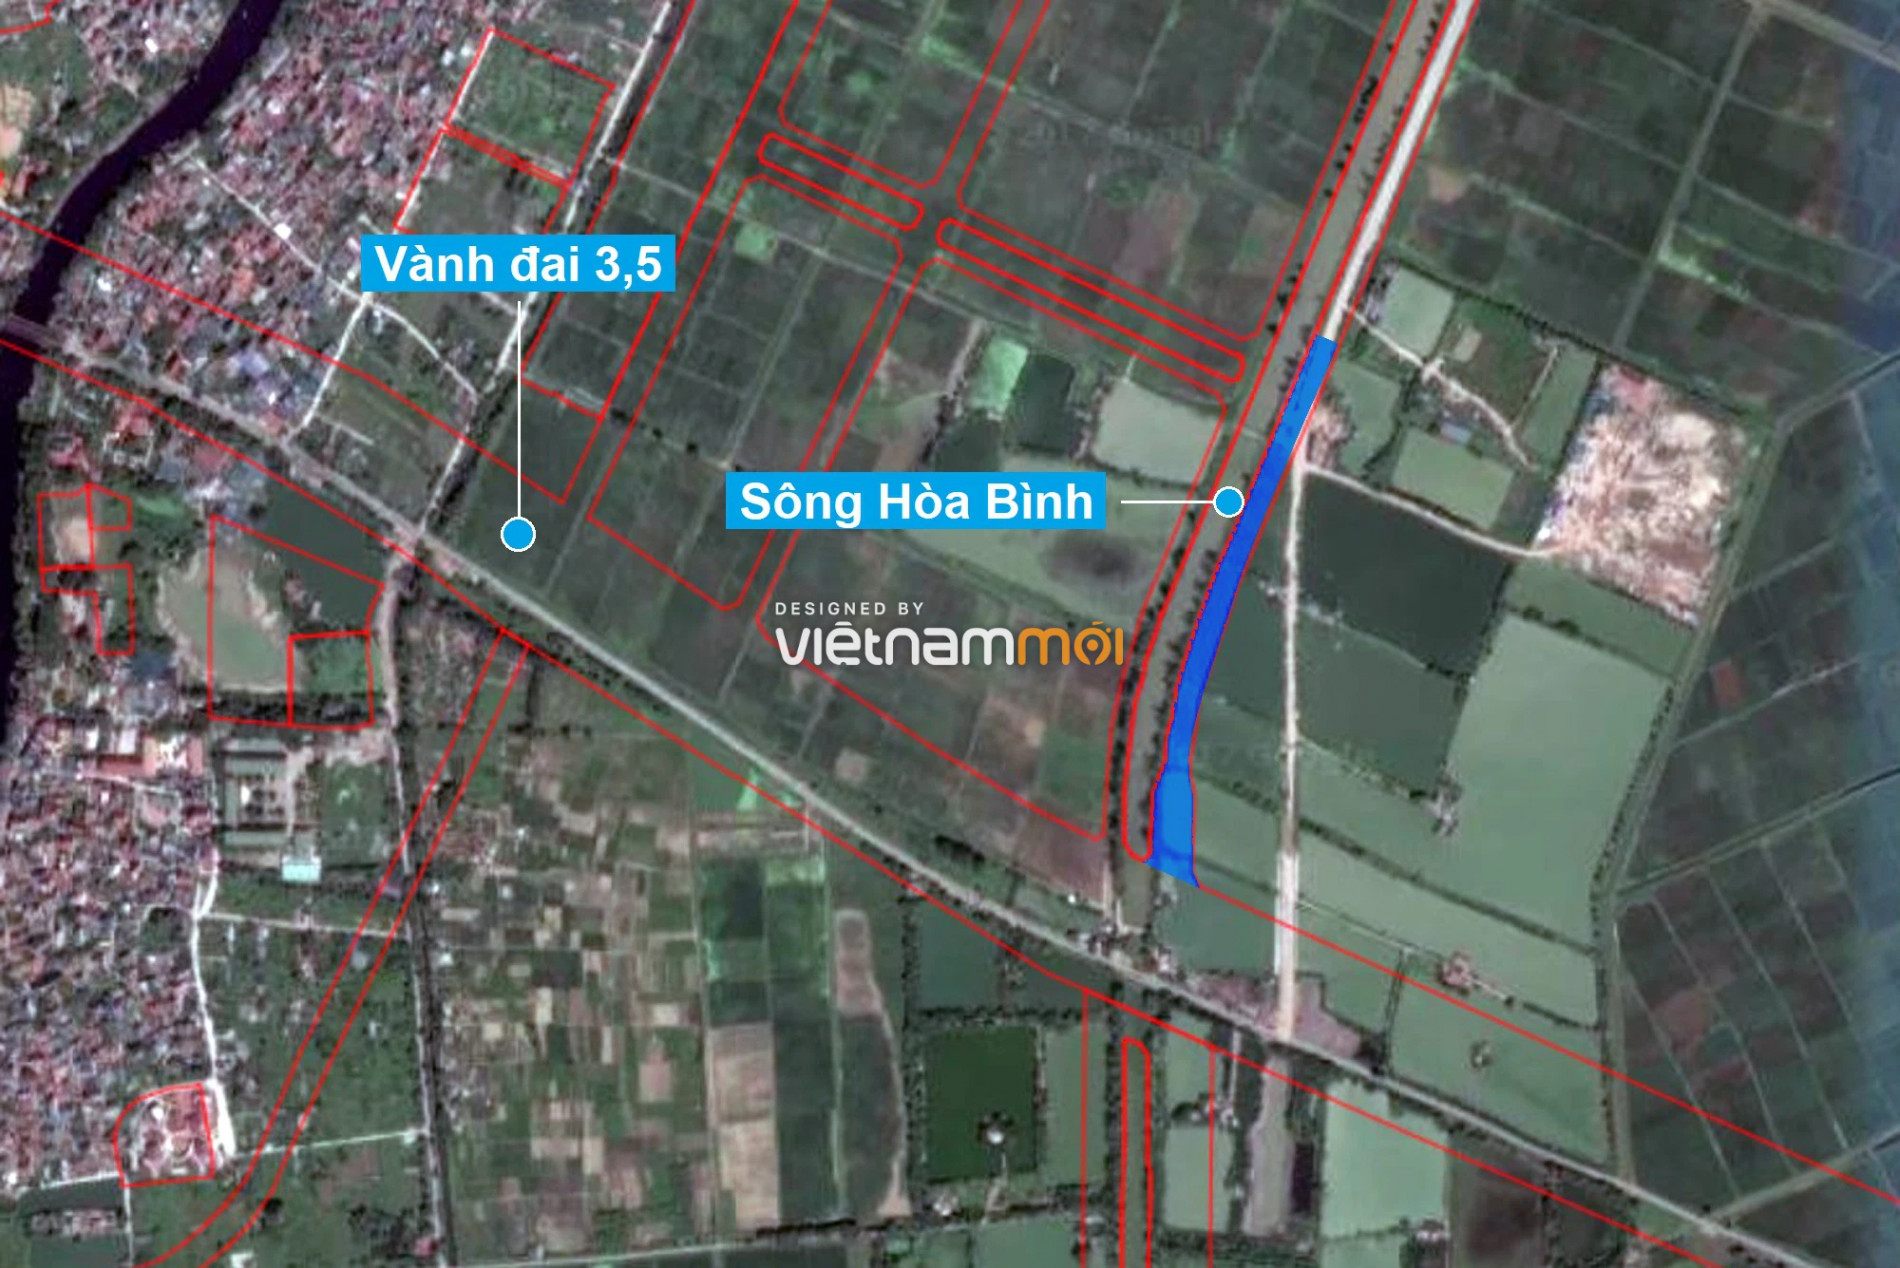 Những khu đất sắp thu hồi để mở đường ở xã Tả Thanh Oai, Thanh Trì, Hà Nội (phần 4) - Ảnh 11.